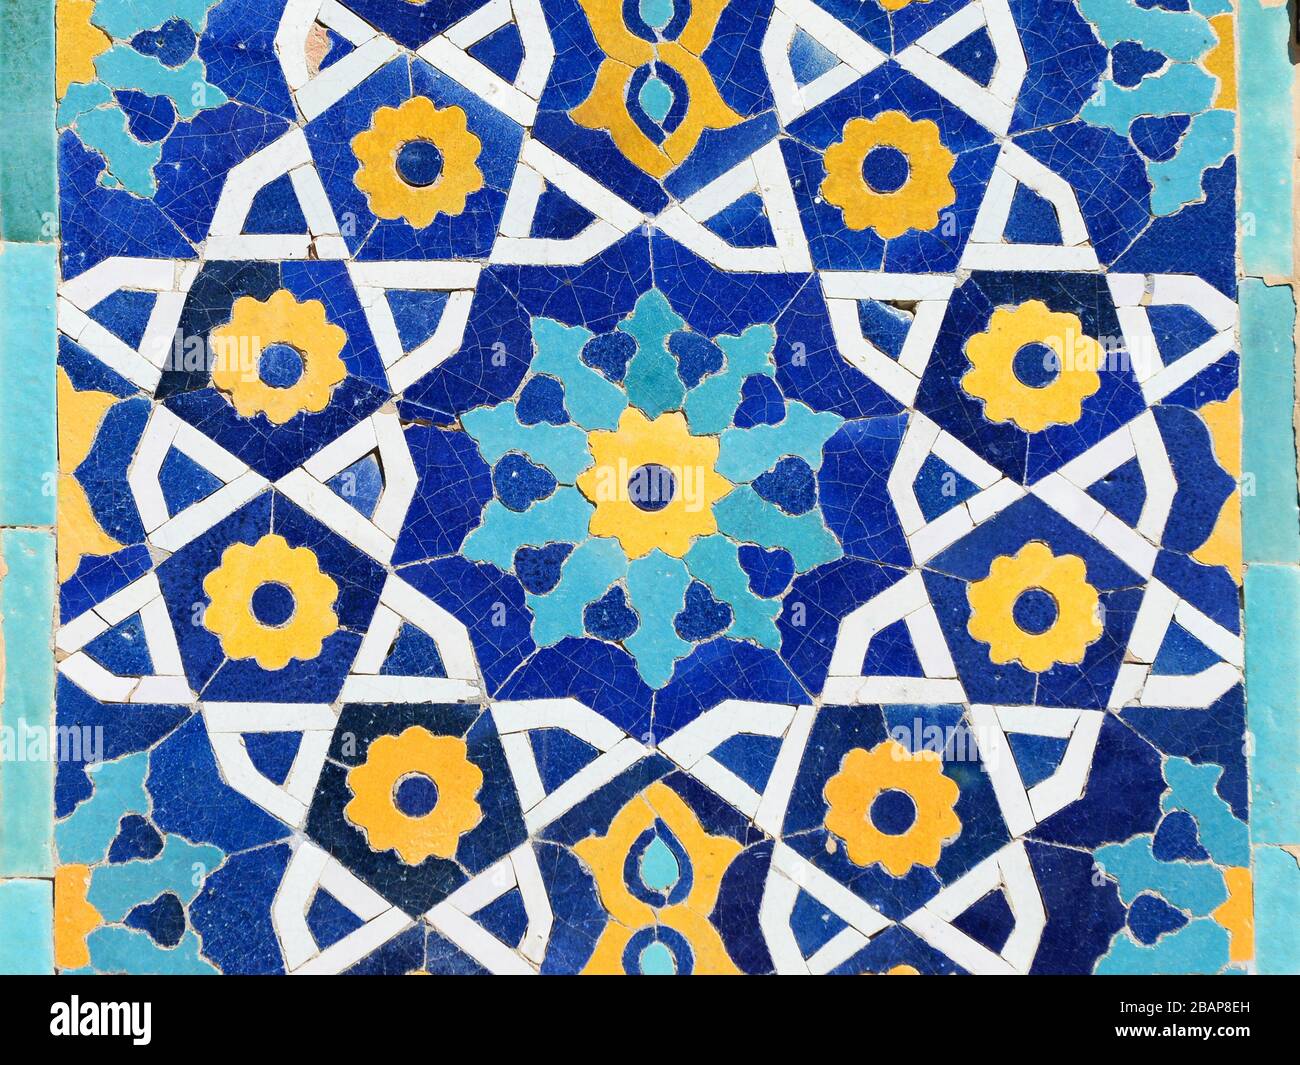 Gros plan avec détails colorés, ornements islamiques et carreaux de céramique jaune, bleu et blanc à Boukhara, Ouzbékistan. Schéma islamique. Banque D'Images